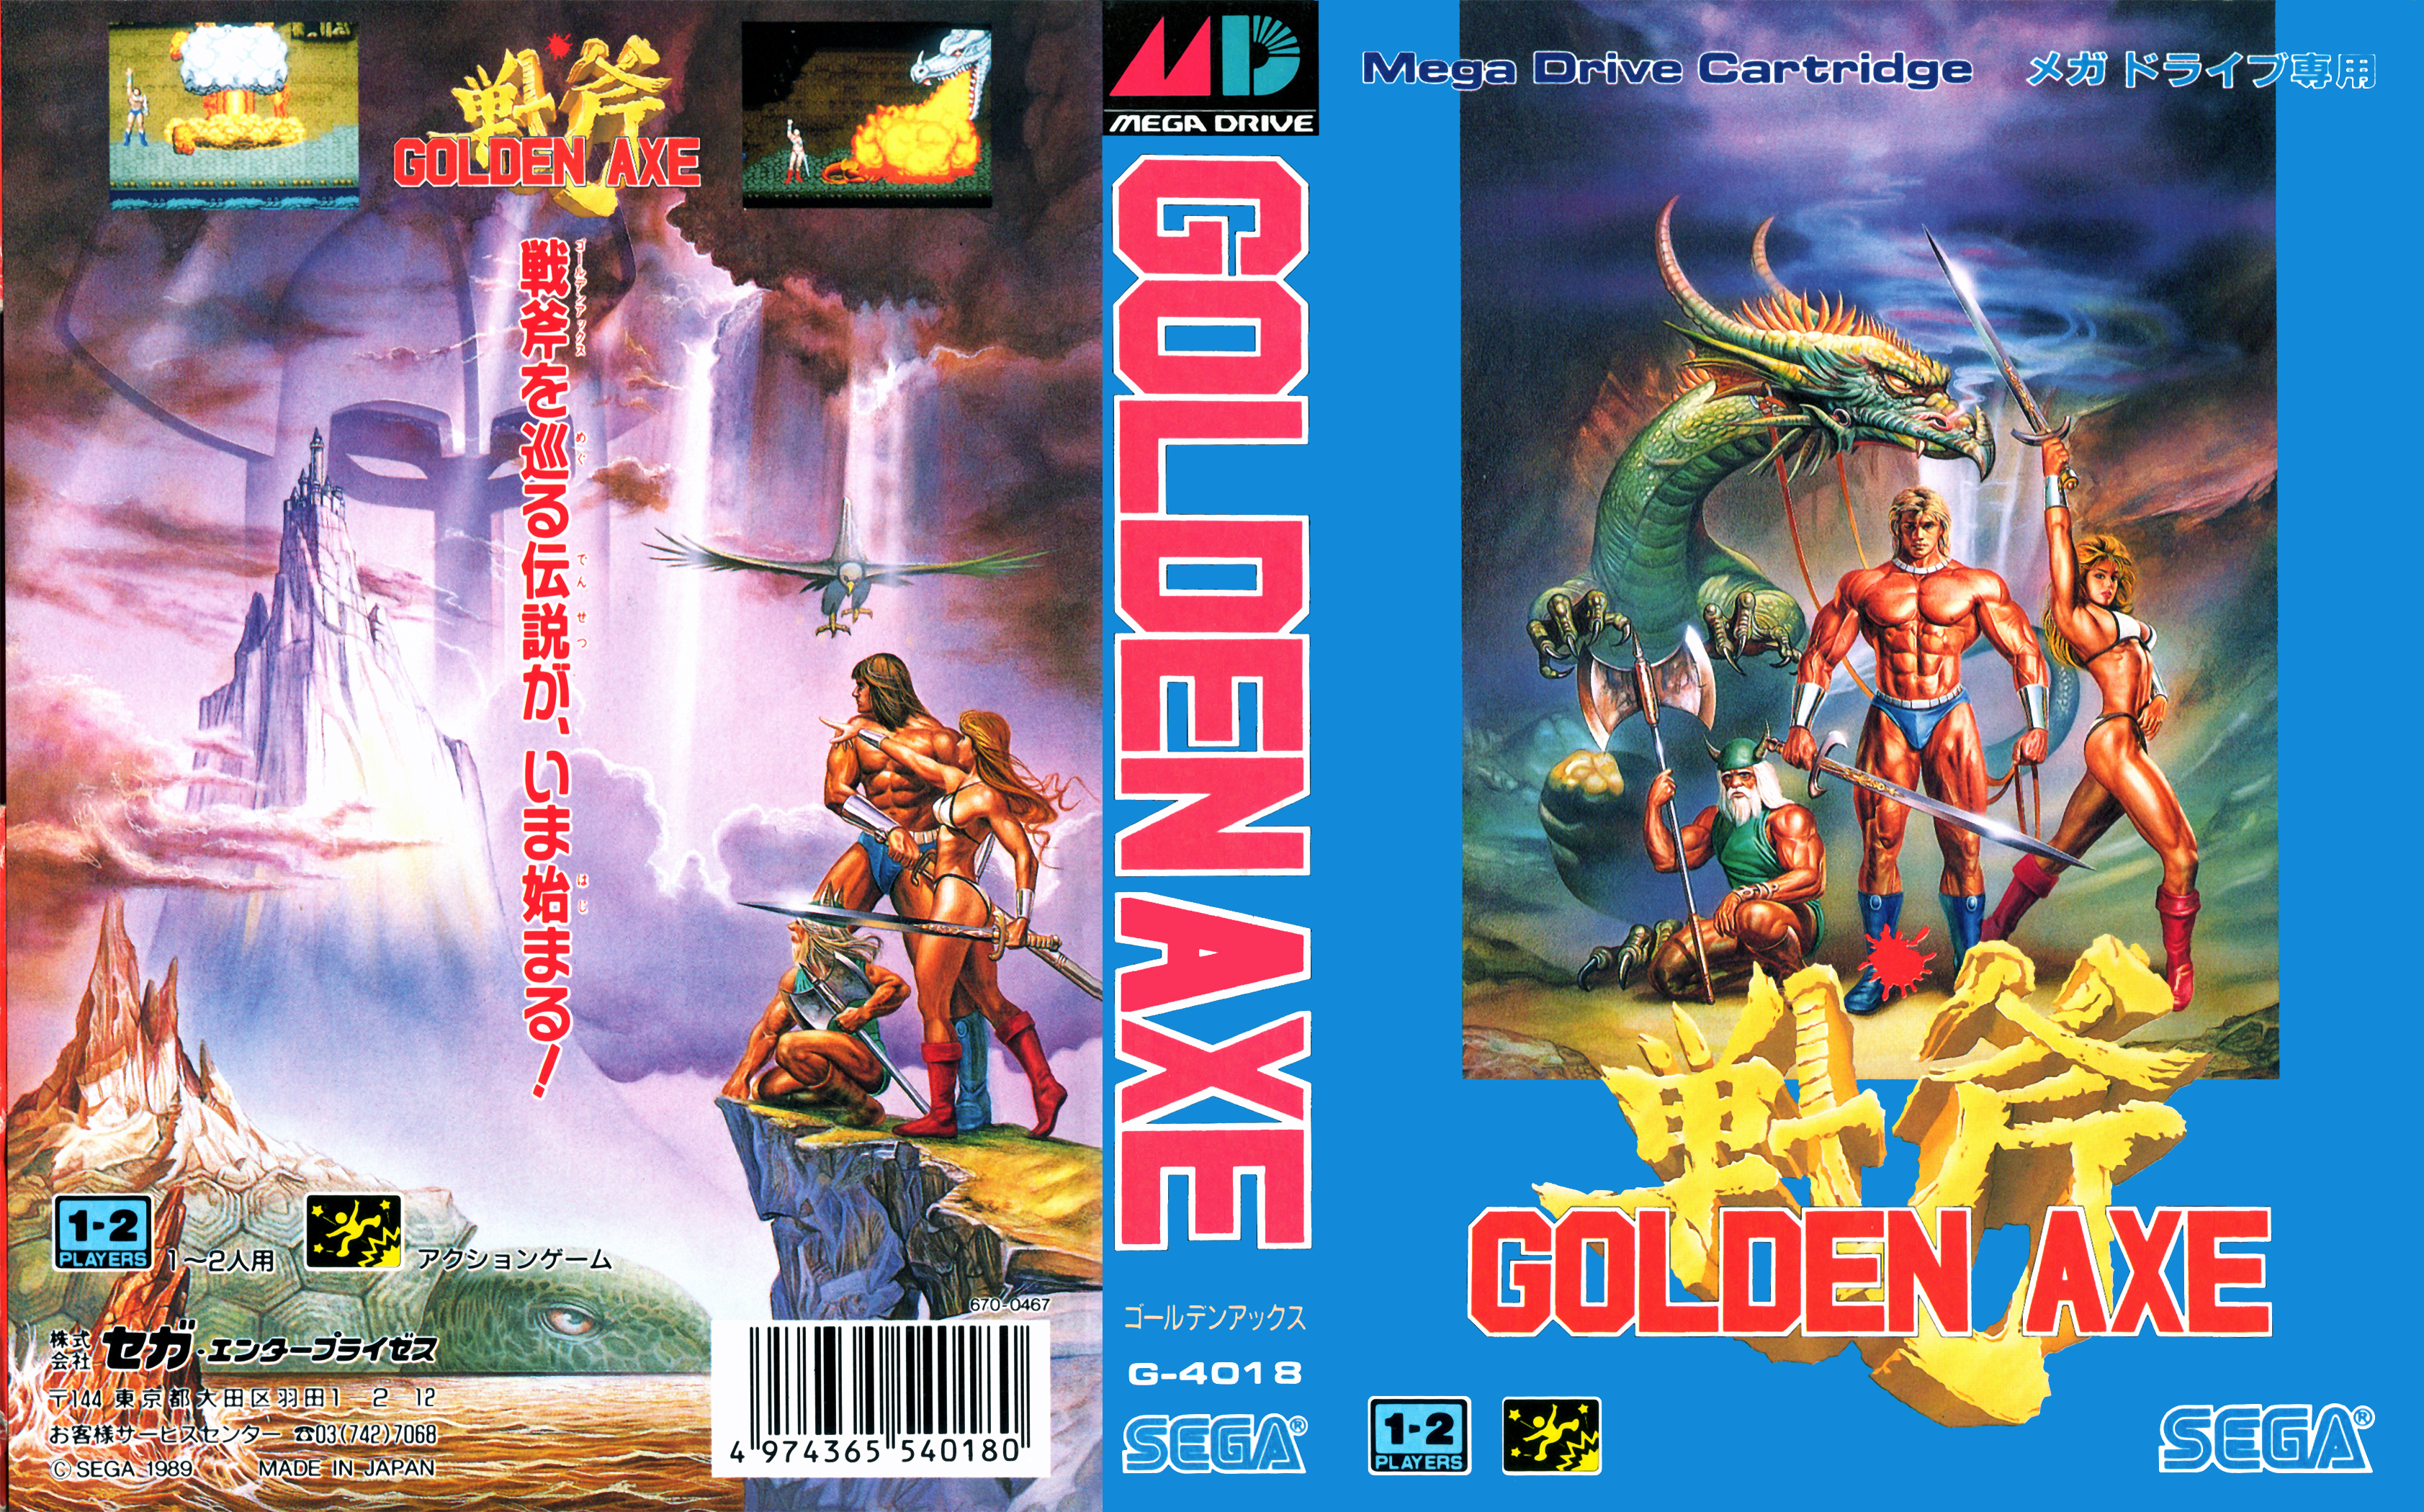 Double Dragon II: The Revenge 2 player Sega Genesis/Mega Drive 60fps 